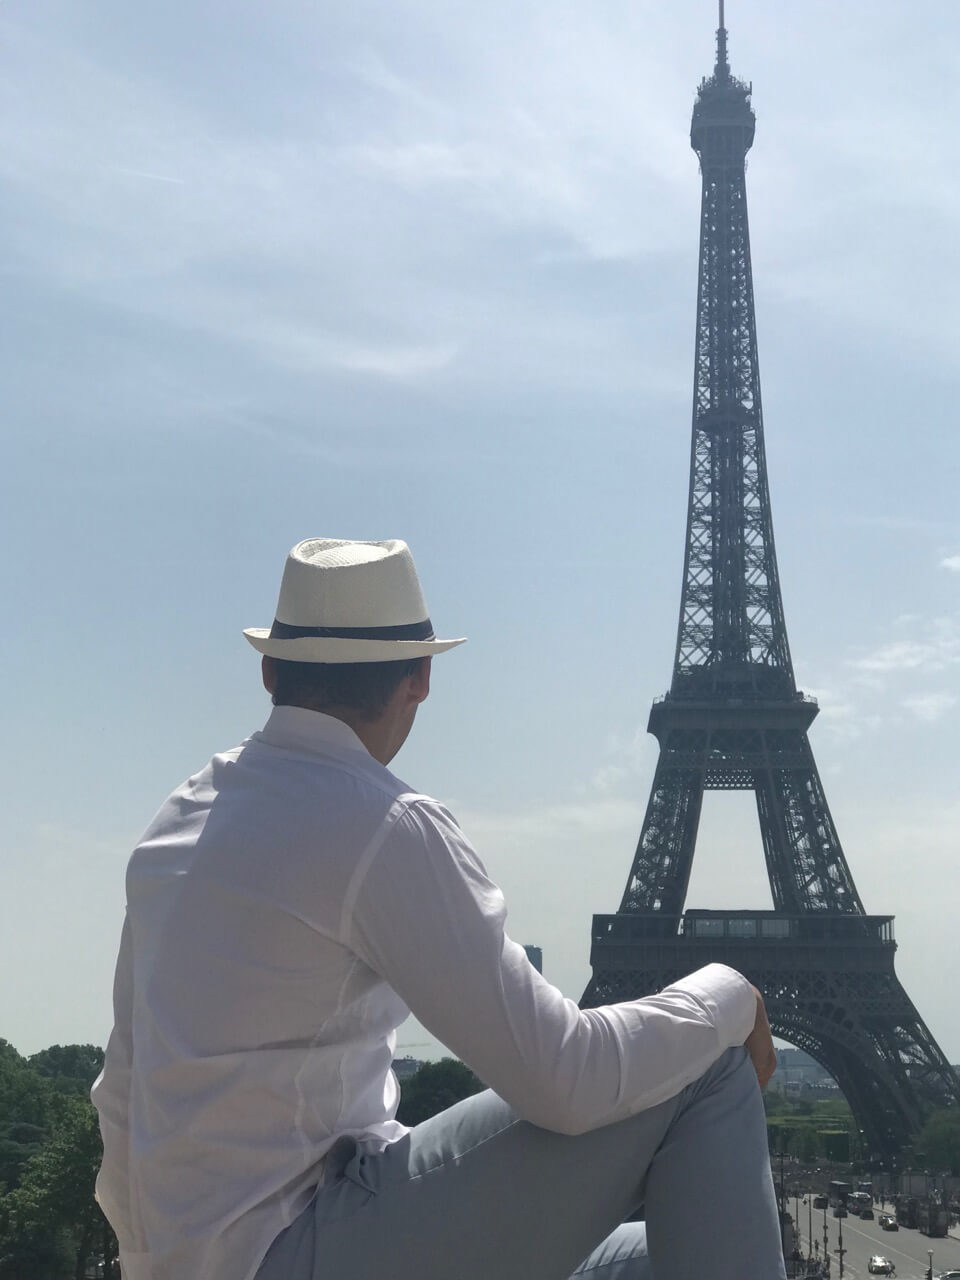 Pericles Rosa do blogue 7 Continentes 1 Passaporte usando uma camisa branca, chapéu branco e calça azul claro sentado no Trocadéro, Paris, admirando a Torre Eiffel